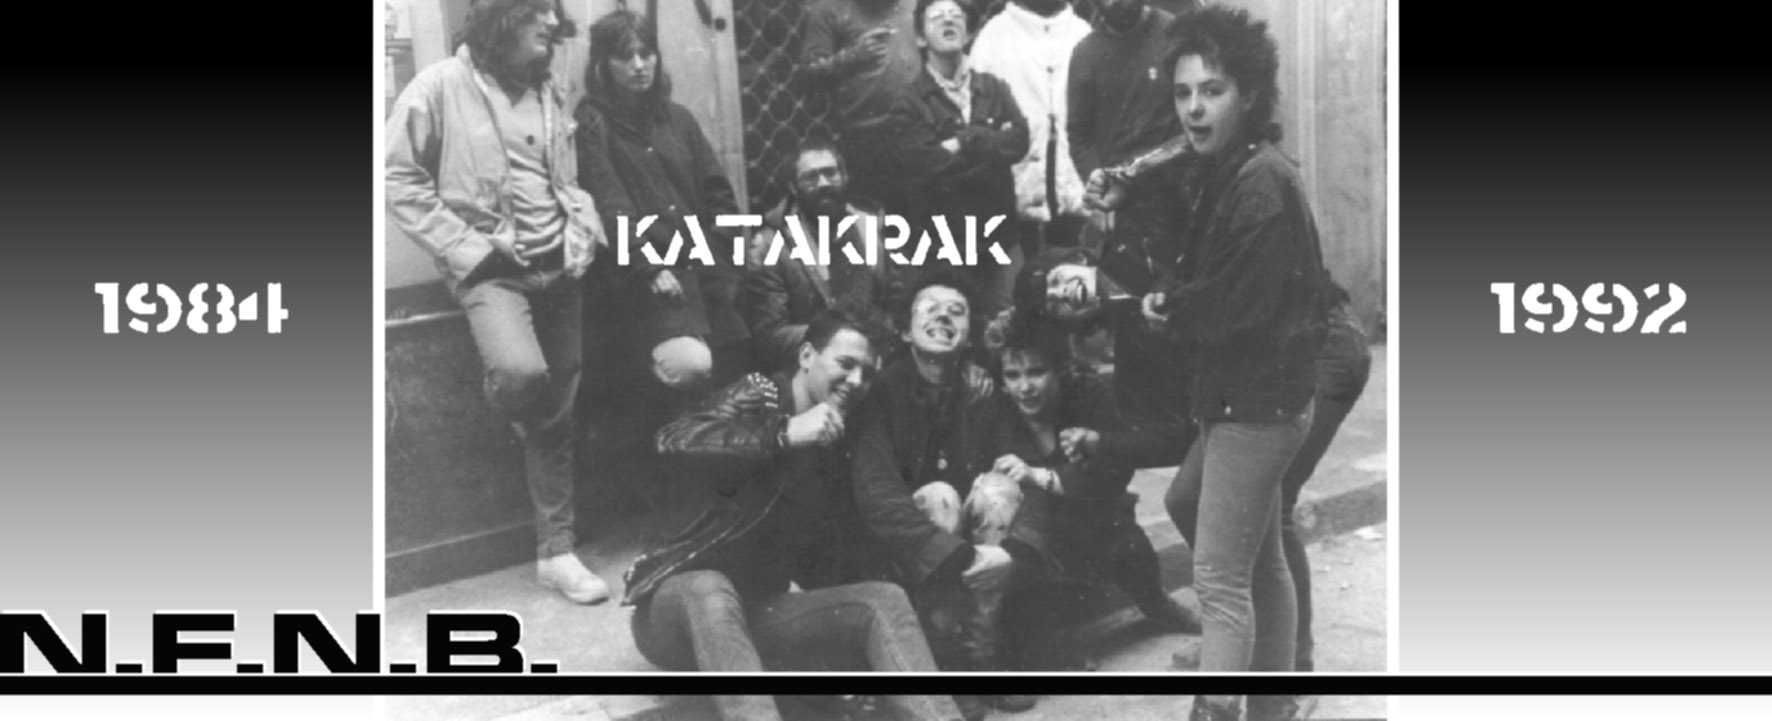 1ª okupación del colectivo KATAKRAK (1985). Abajo a la izquierda Patxi-N.F.N.B. y Eskroto-N.F.N.B. (D.E.P.)